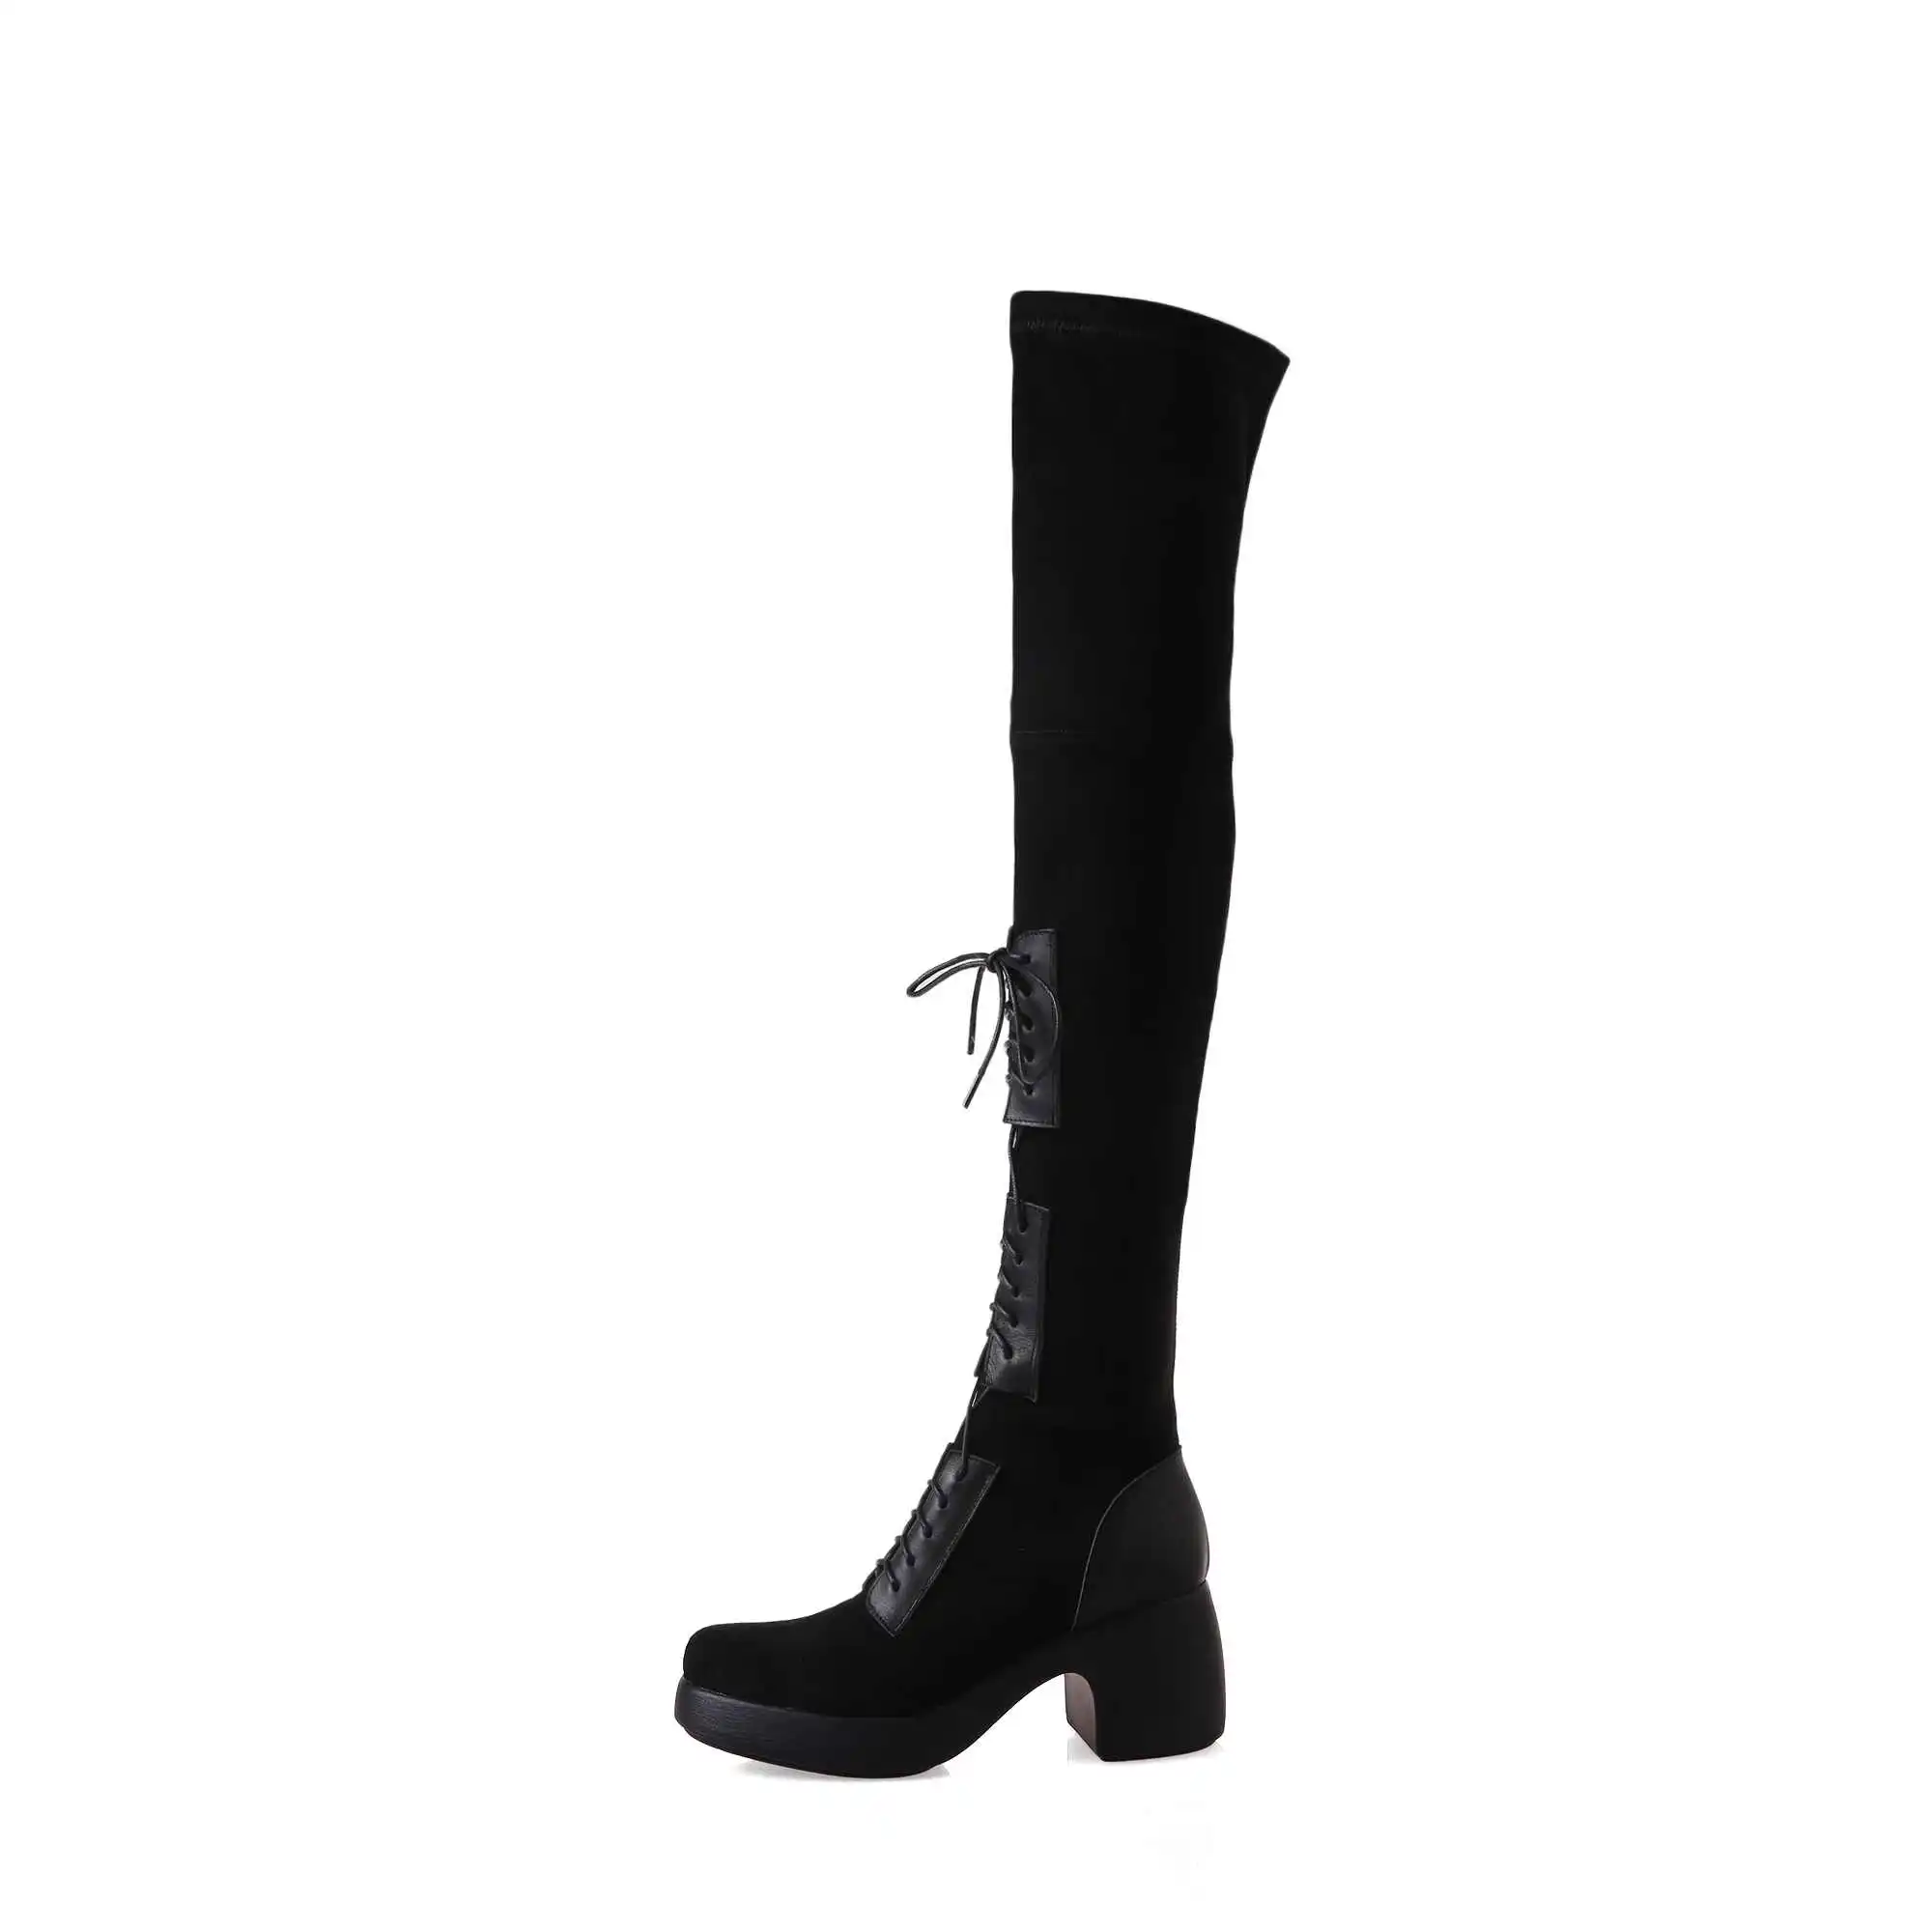 Krazing Pot/Лидер продаж; модные зимние сапоги выше колена из телячьей кожи с круглым носком на высоком каблуке со шнуровкой; L32